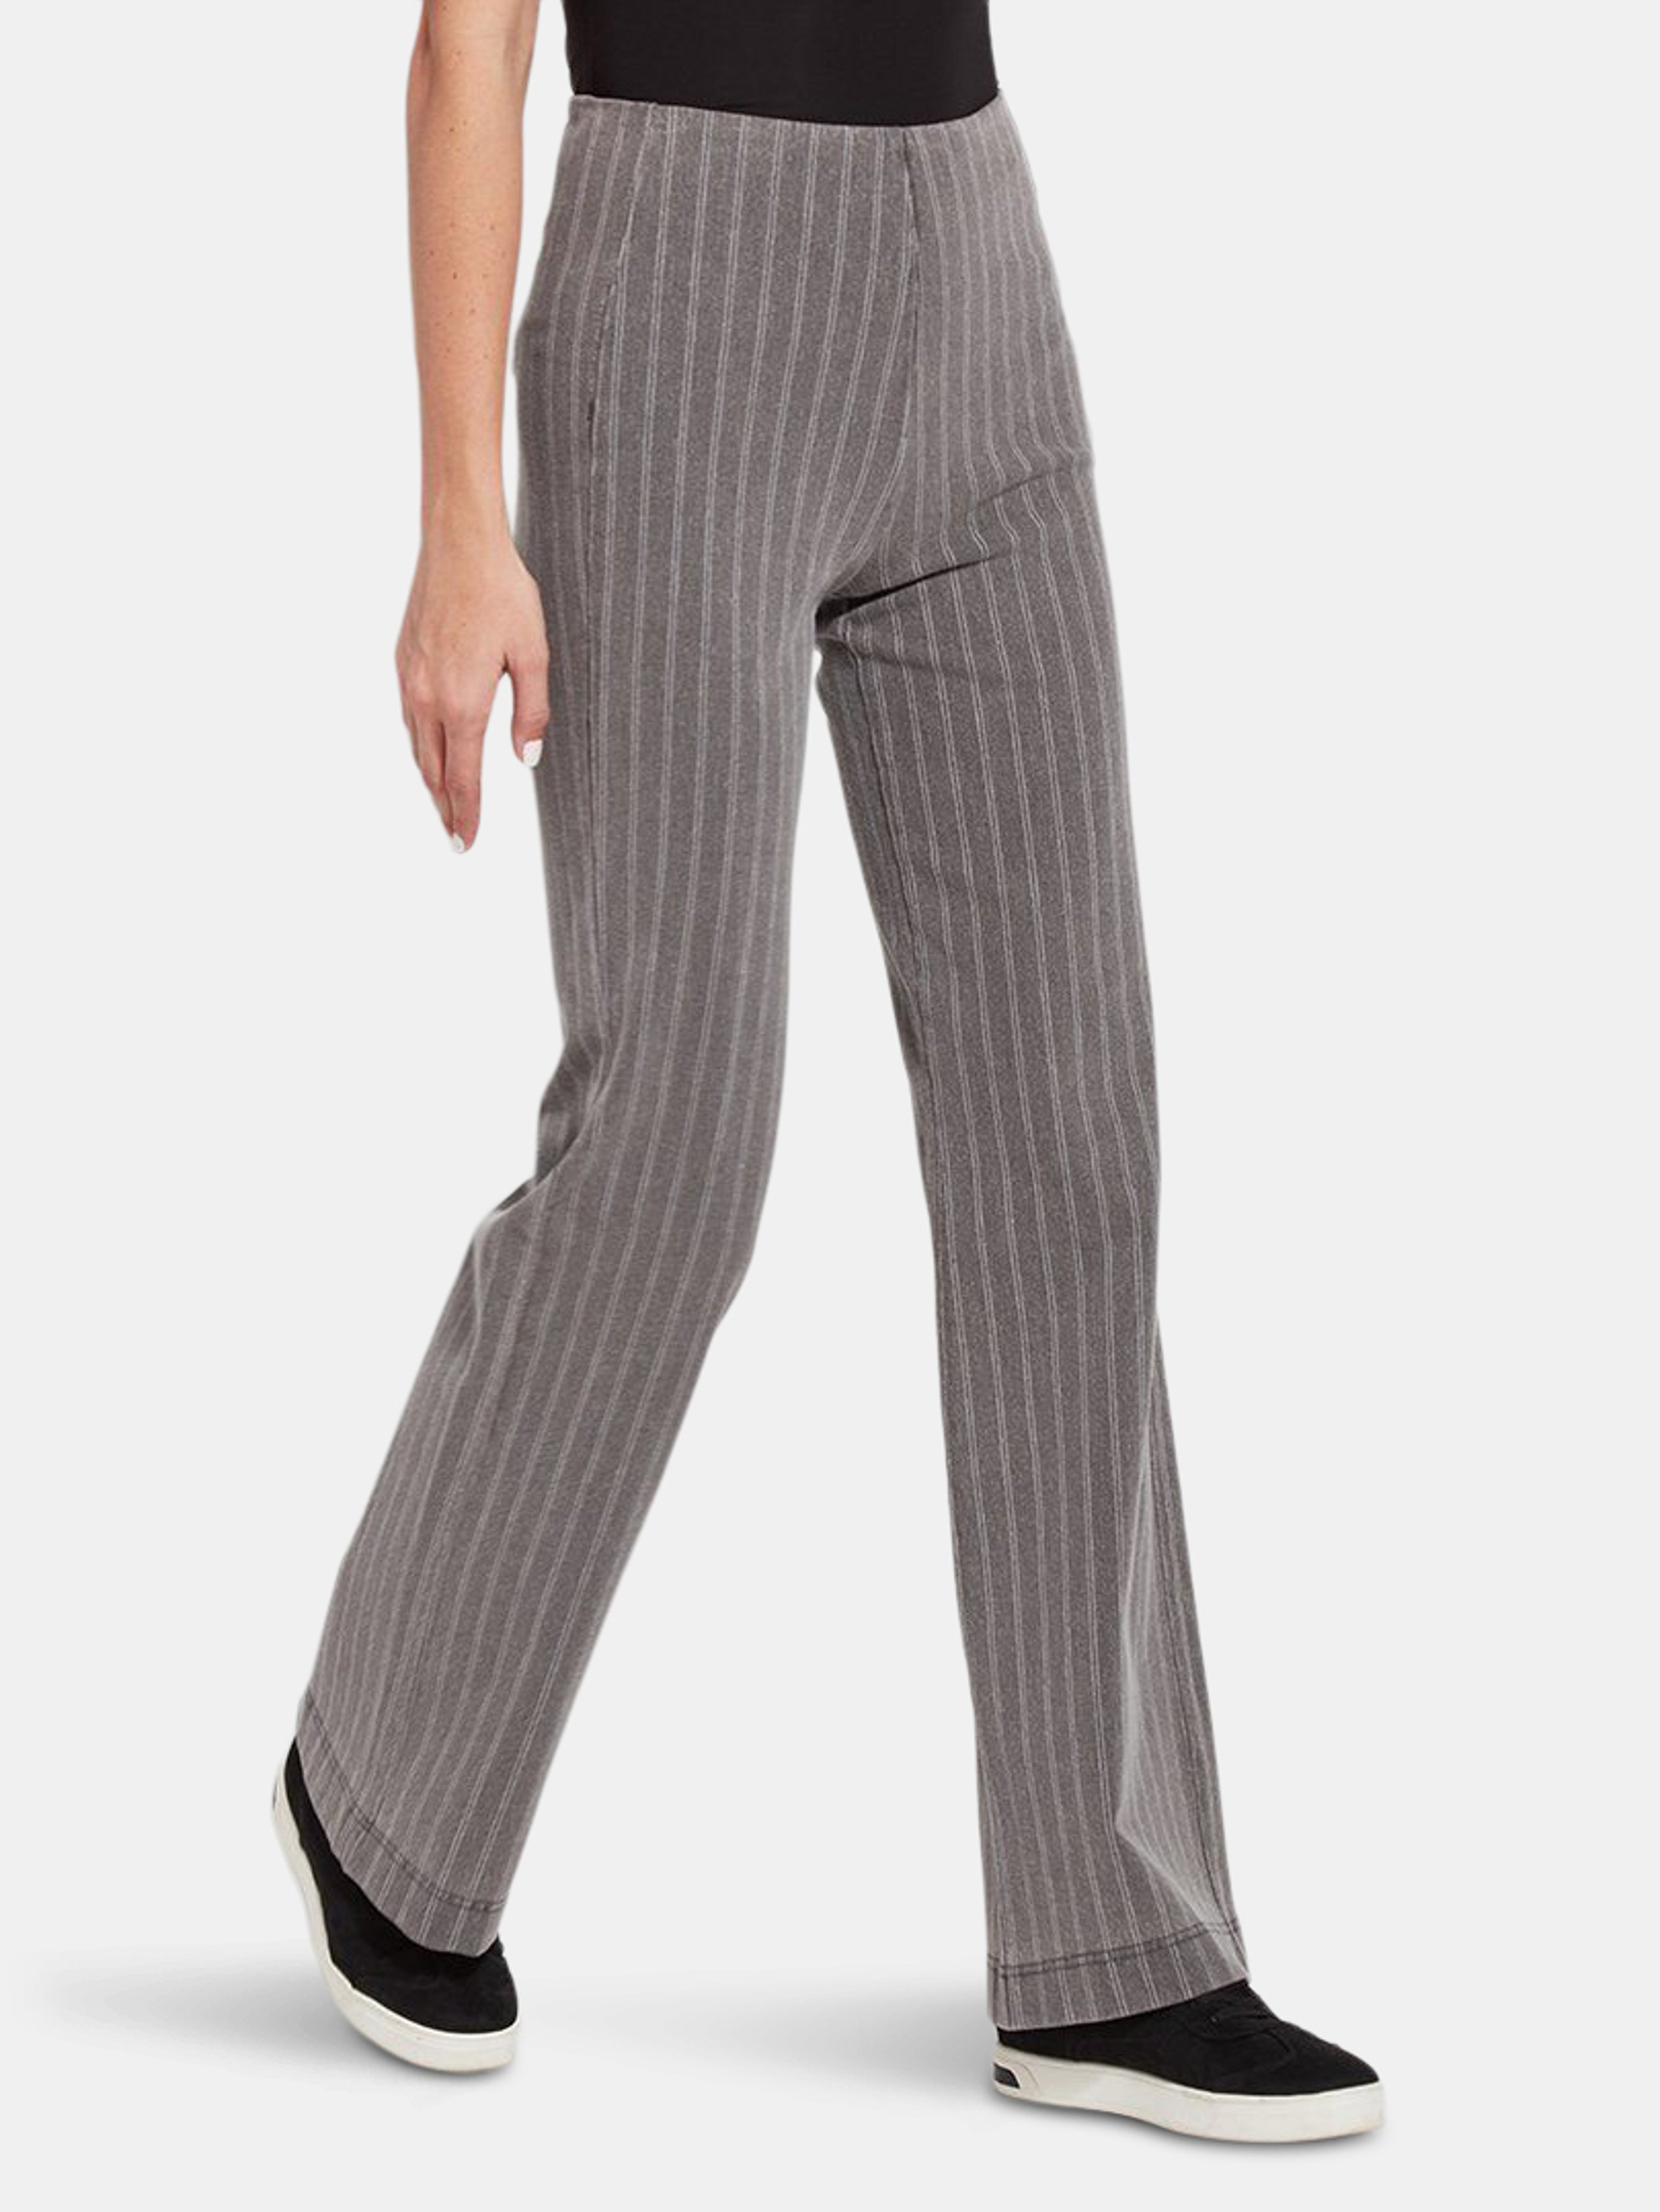 Lyssé Lysse Denim Trouser Pattern In Grey